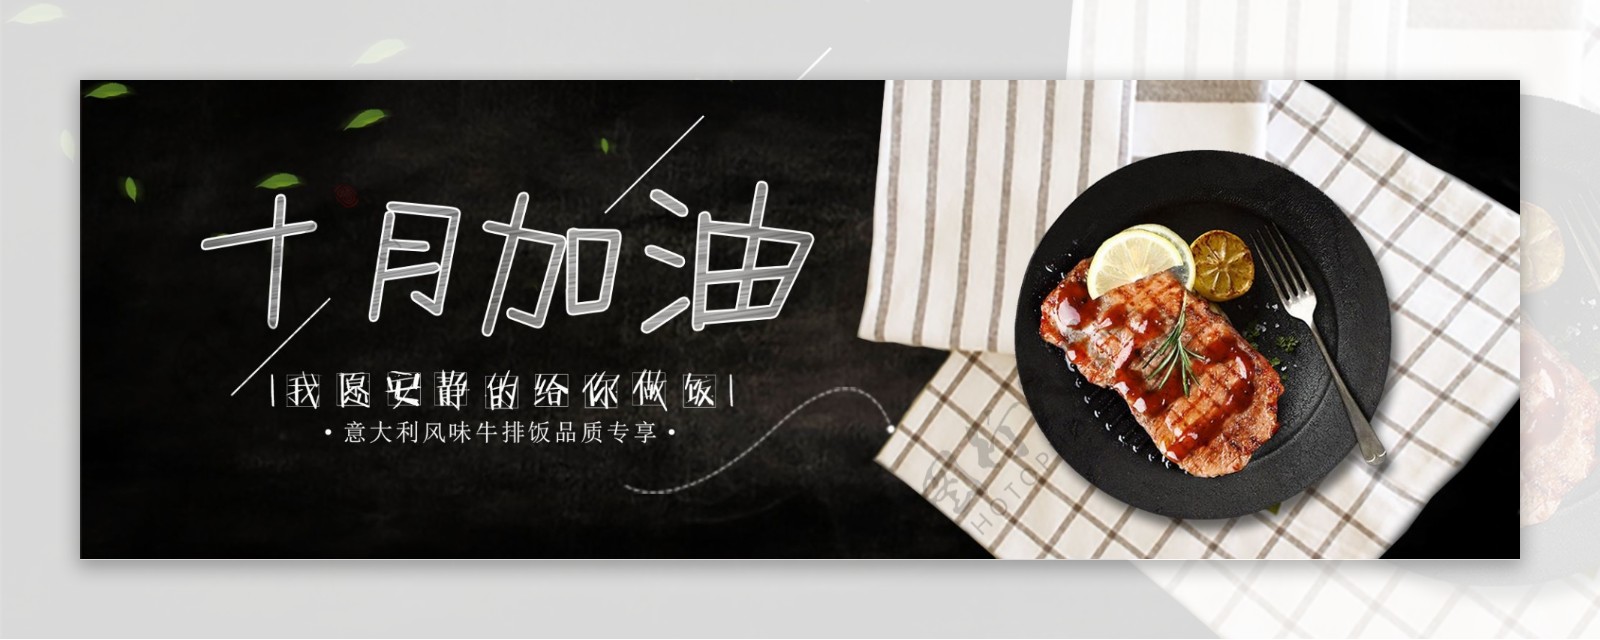 牛排饭banner